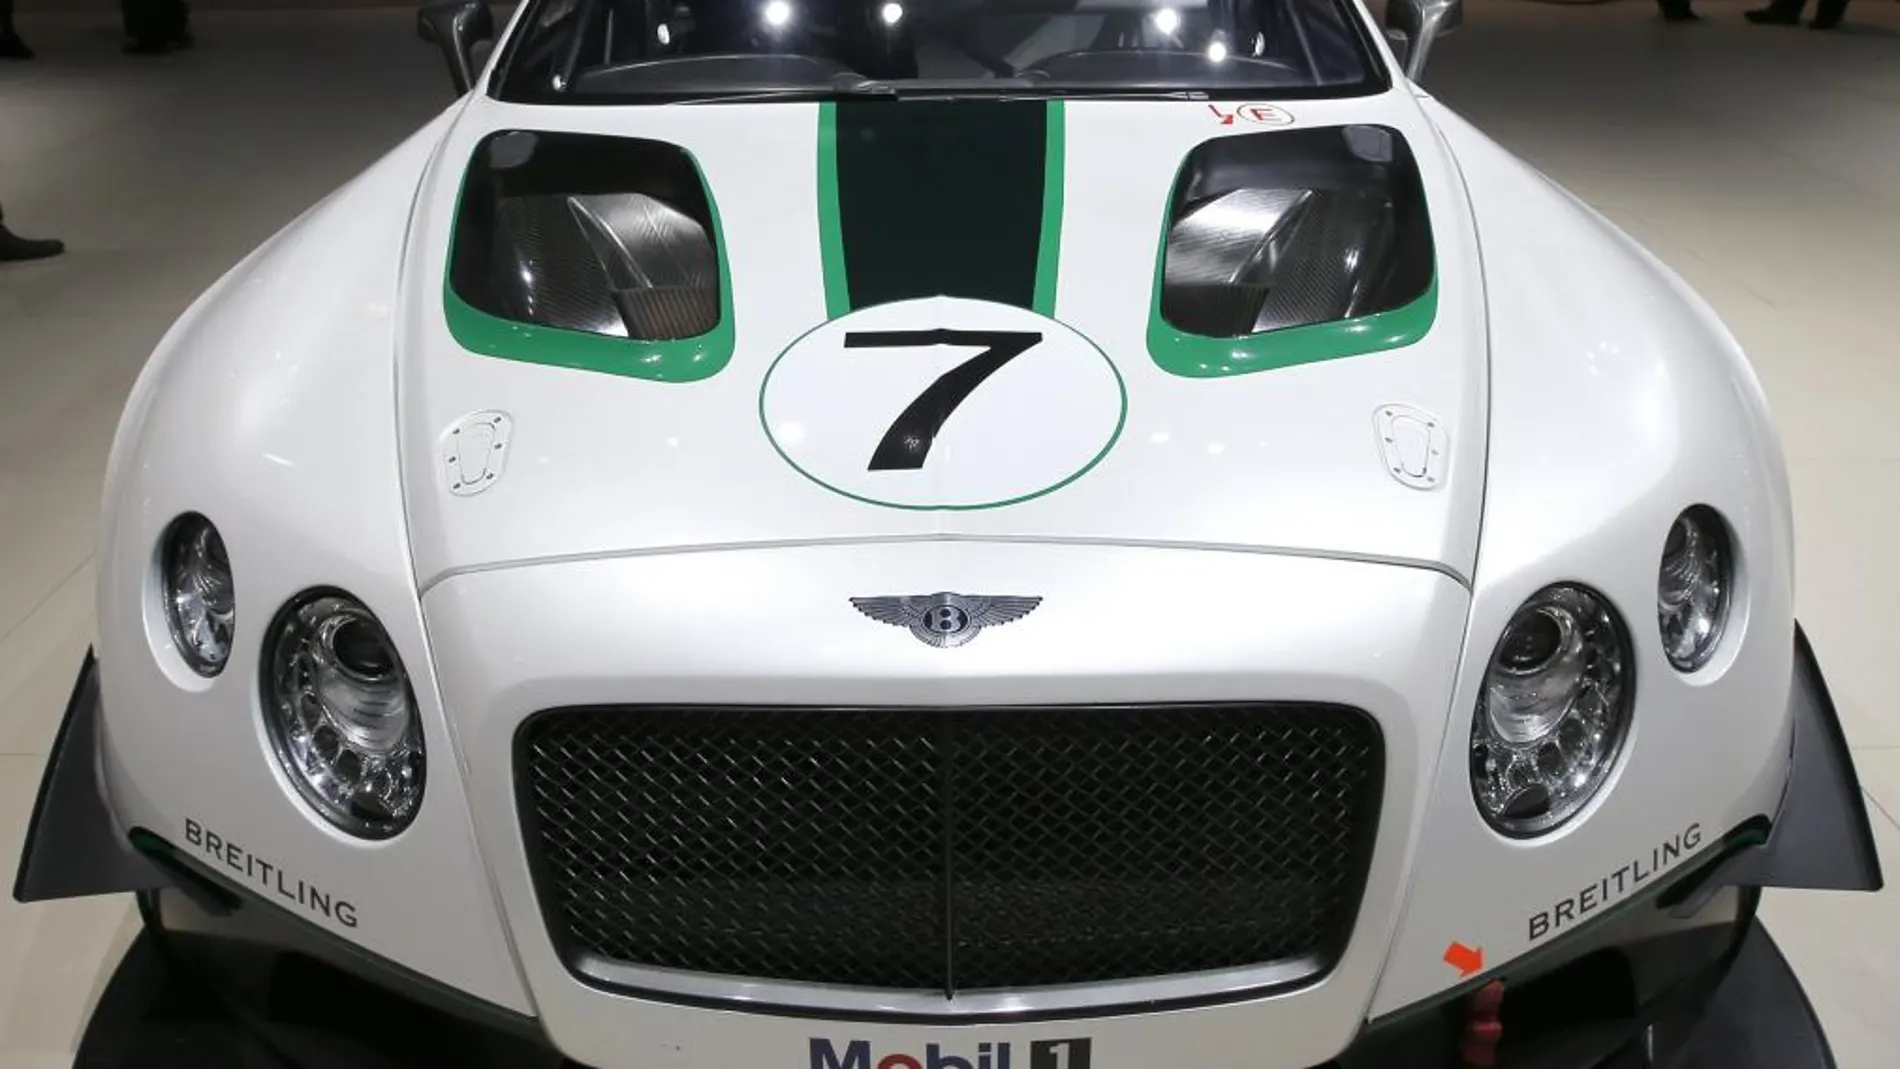 Imagen del Bentley GT3 expuesto en el Salón Internacional del Automóvil de Nueva York.